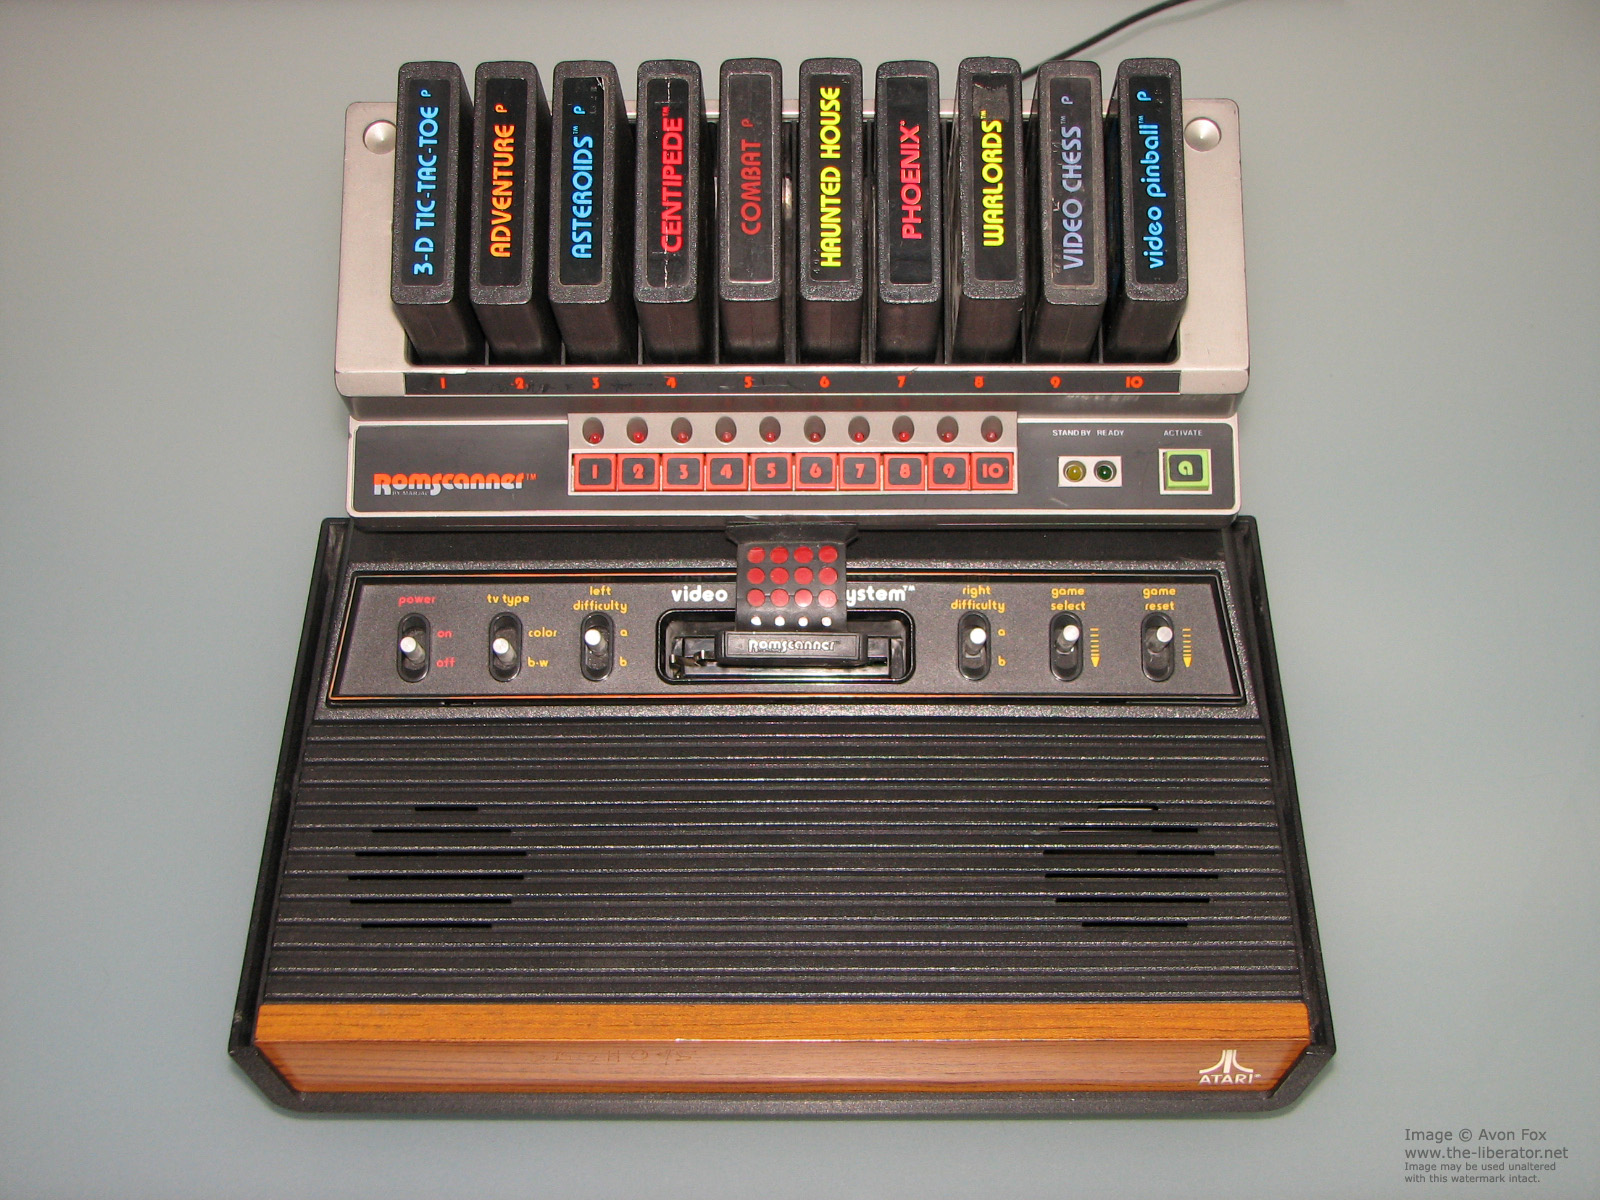 Atari-2600-ROM-Scanner-by-MARJAC-1983-Rev-D-001c.JPG